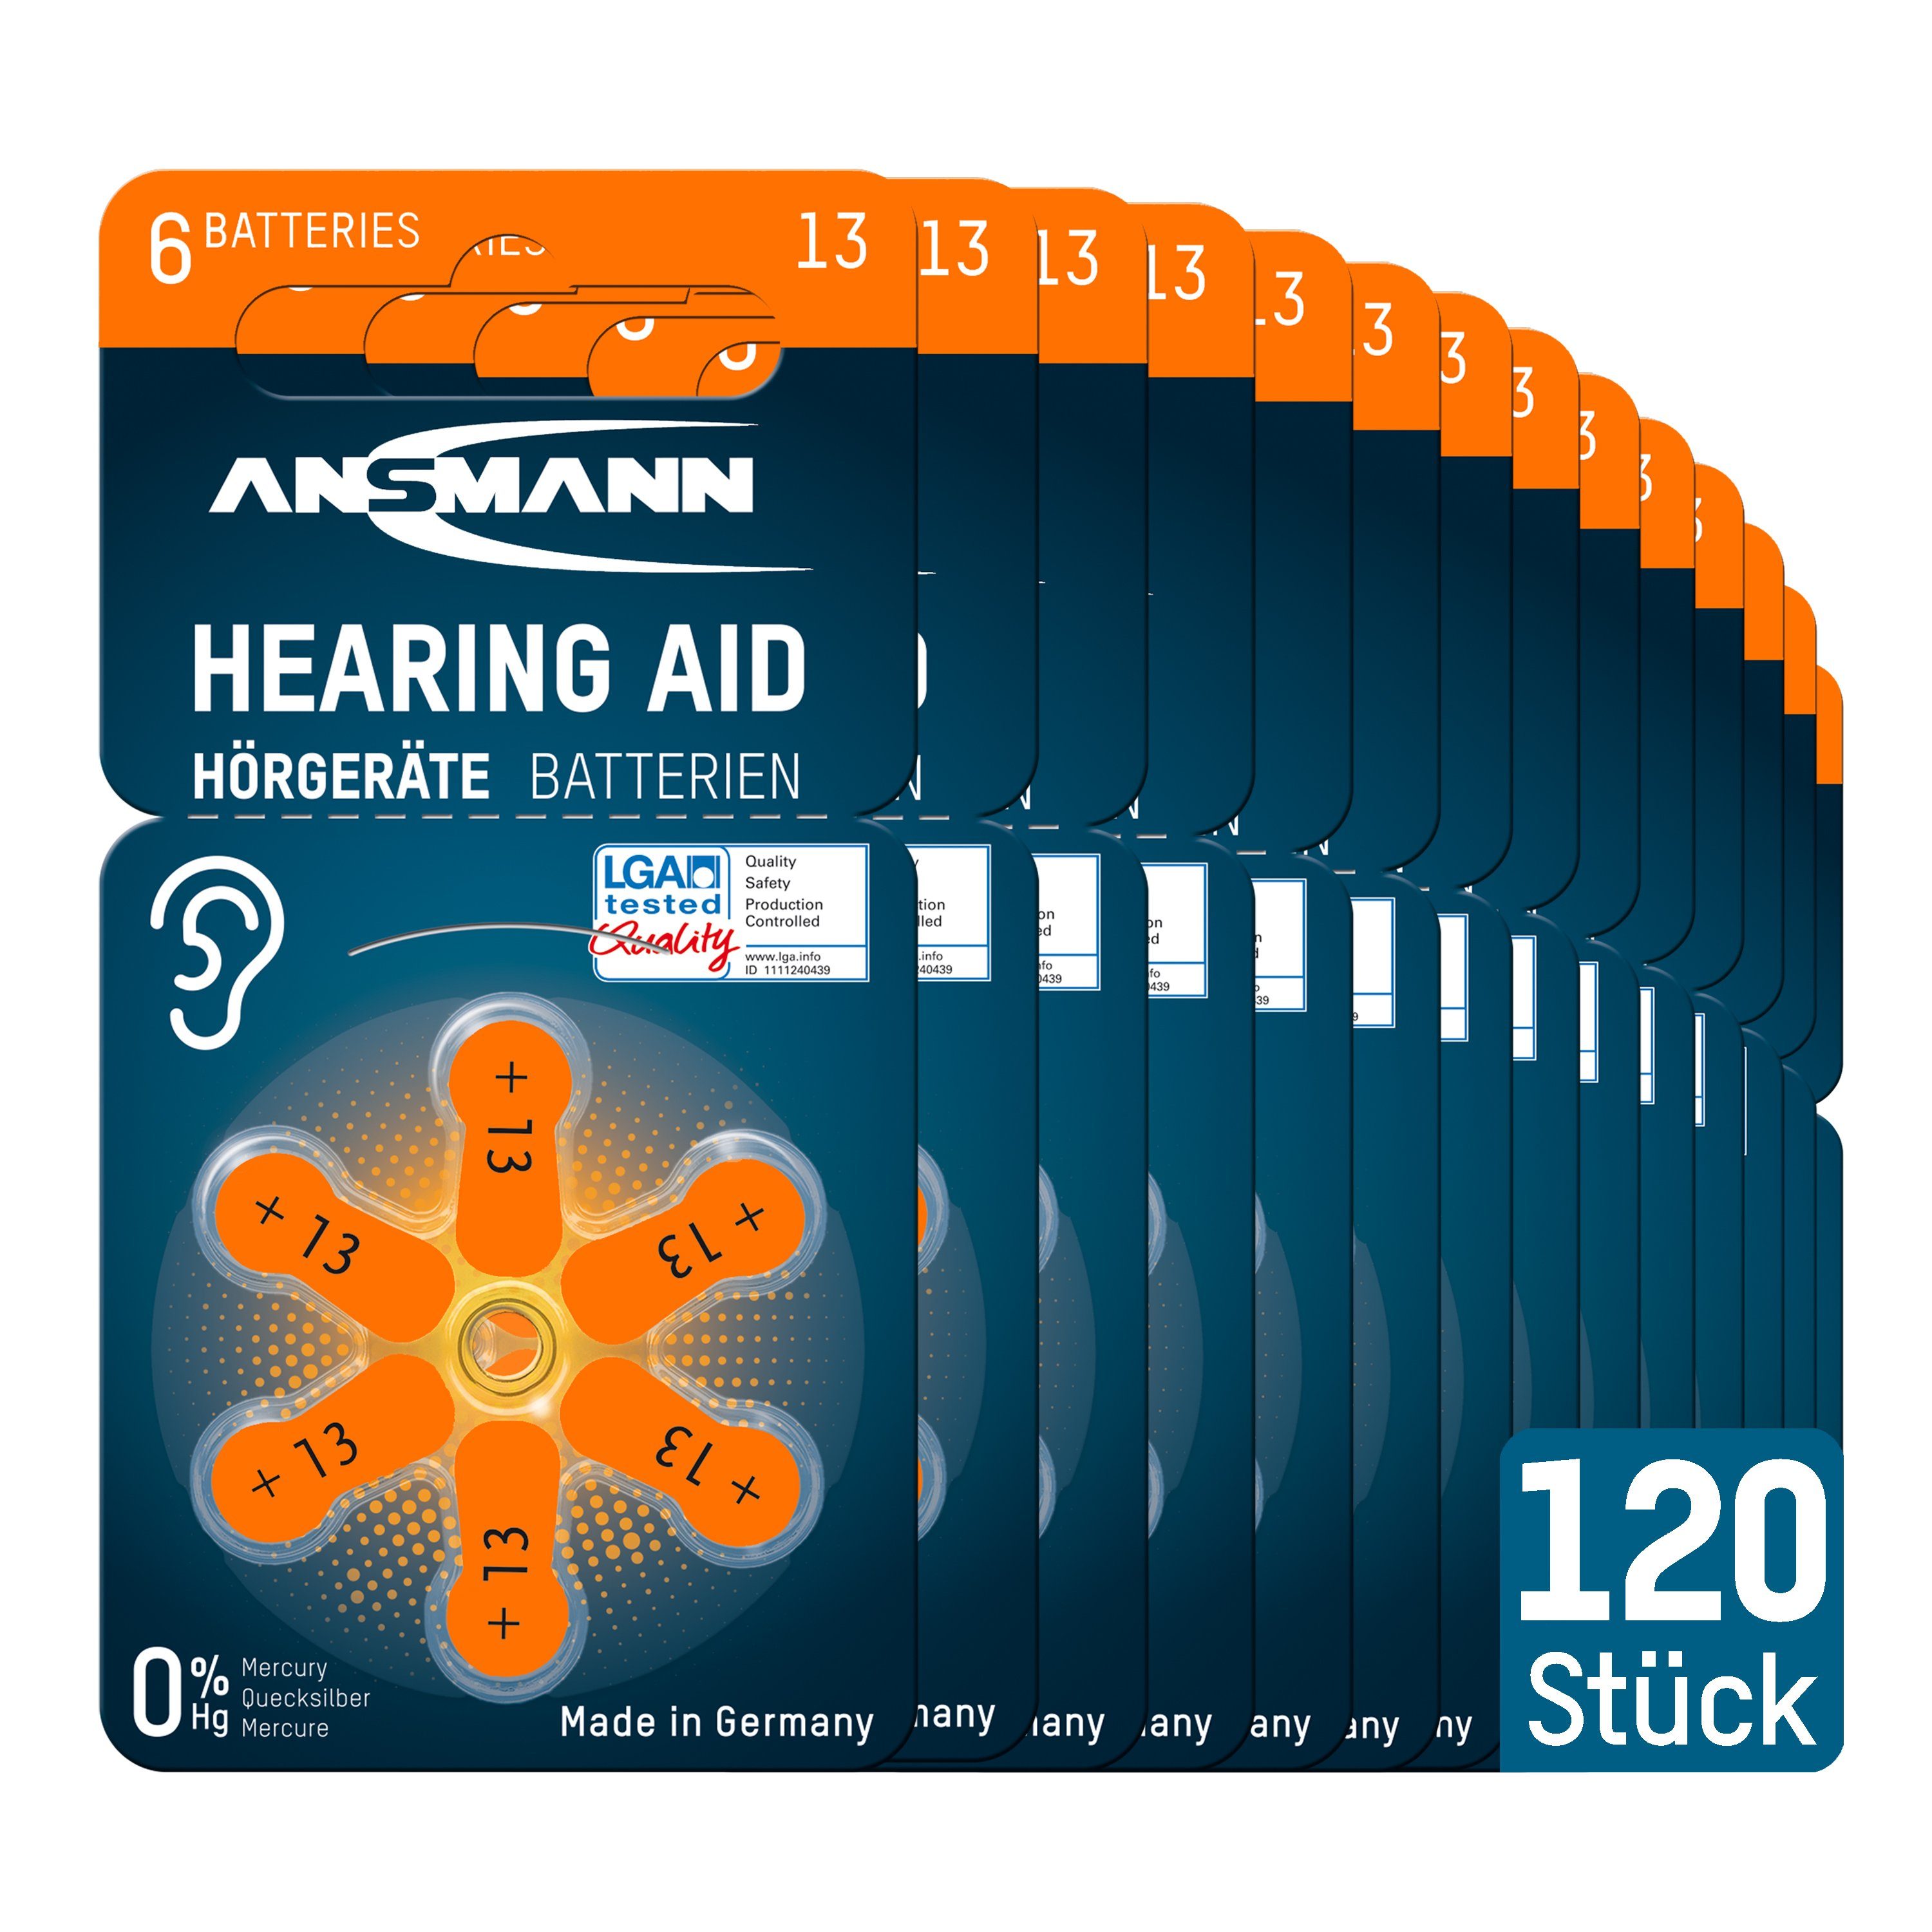 [Sie können echte Produkte zu günstigen Preisen kaufen!] ANSMANN® 120x Hörgerätebatterien PR48 orange Zink in Germany Luft Made Knopfzelle